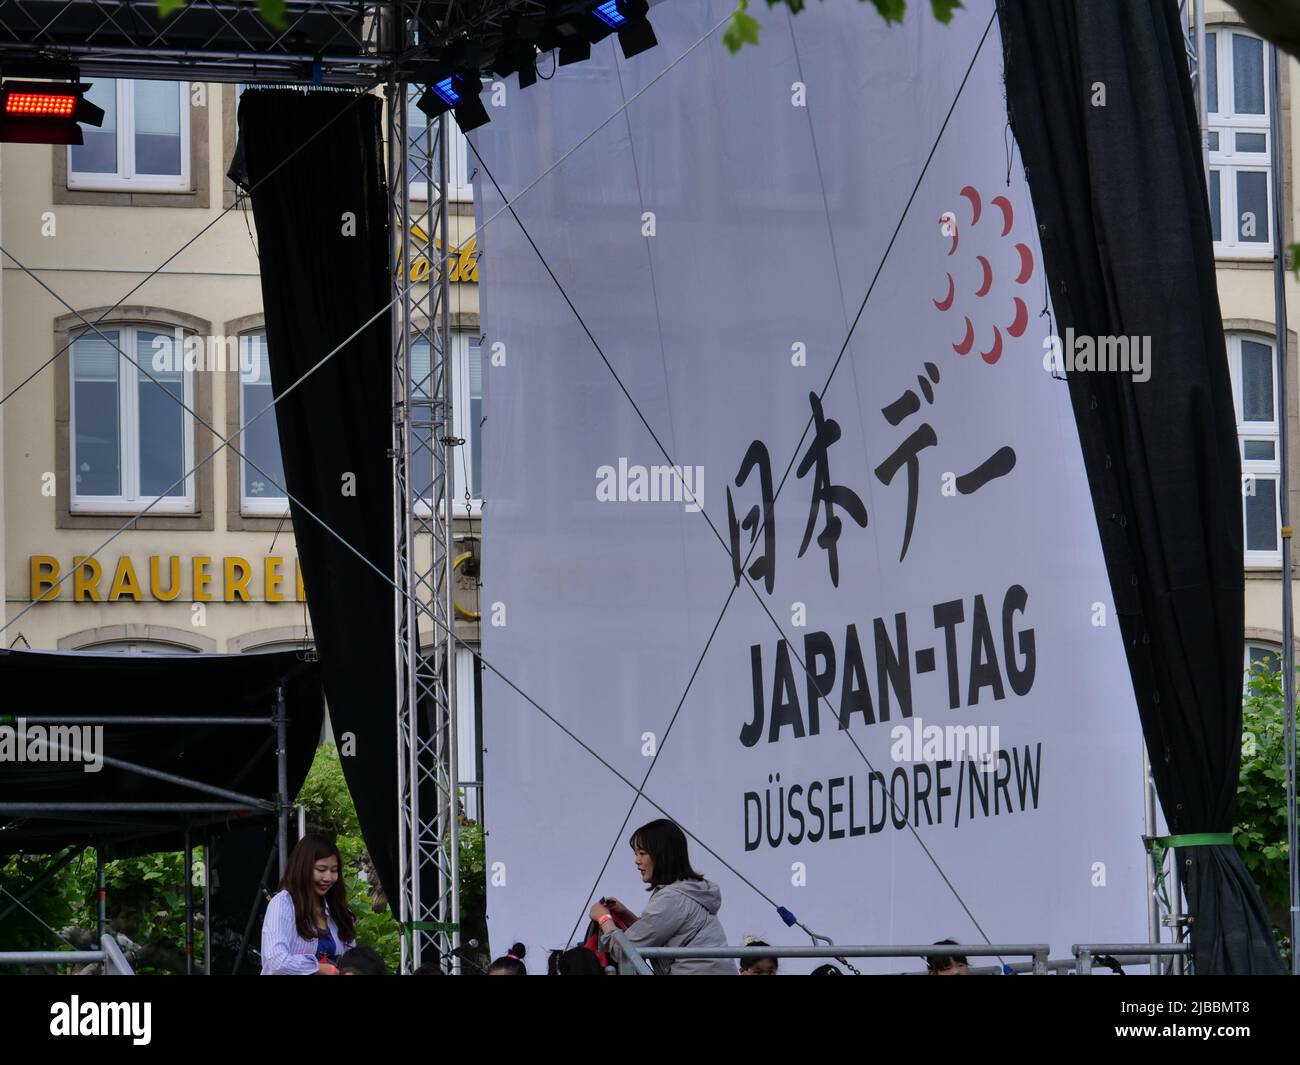 Deutschland, Düsseldorf, Düsseldorf, Rheinpromenade, Mai 21, 2022, 247 Uhr, Japan Day, Festival des japanischen Volkes, Begrüßungs- und Werbeplakat Stockfoto